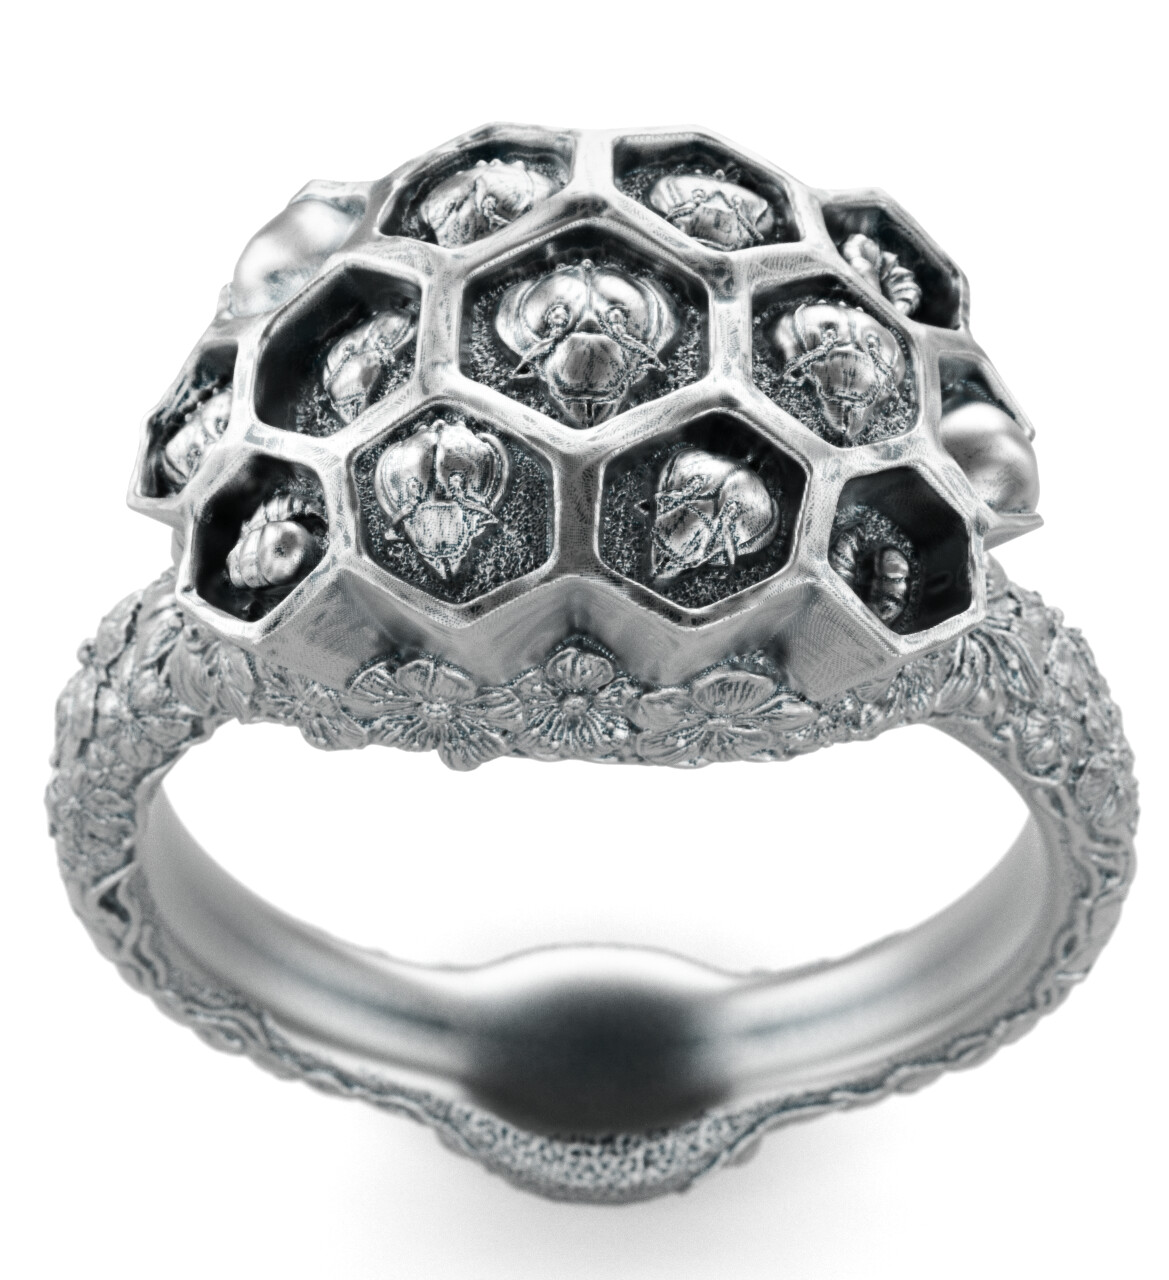 Earlier version of the ring rendered in Keyshot